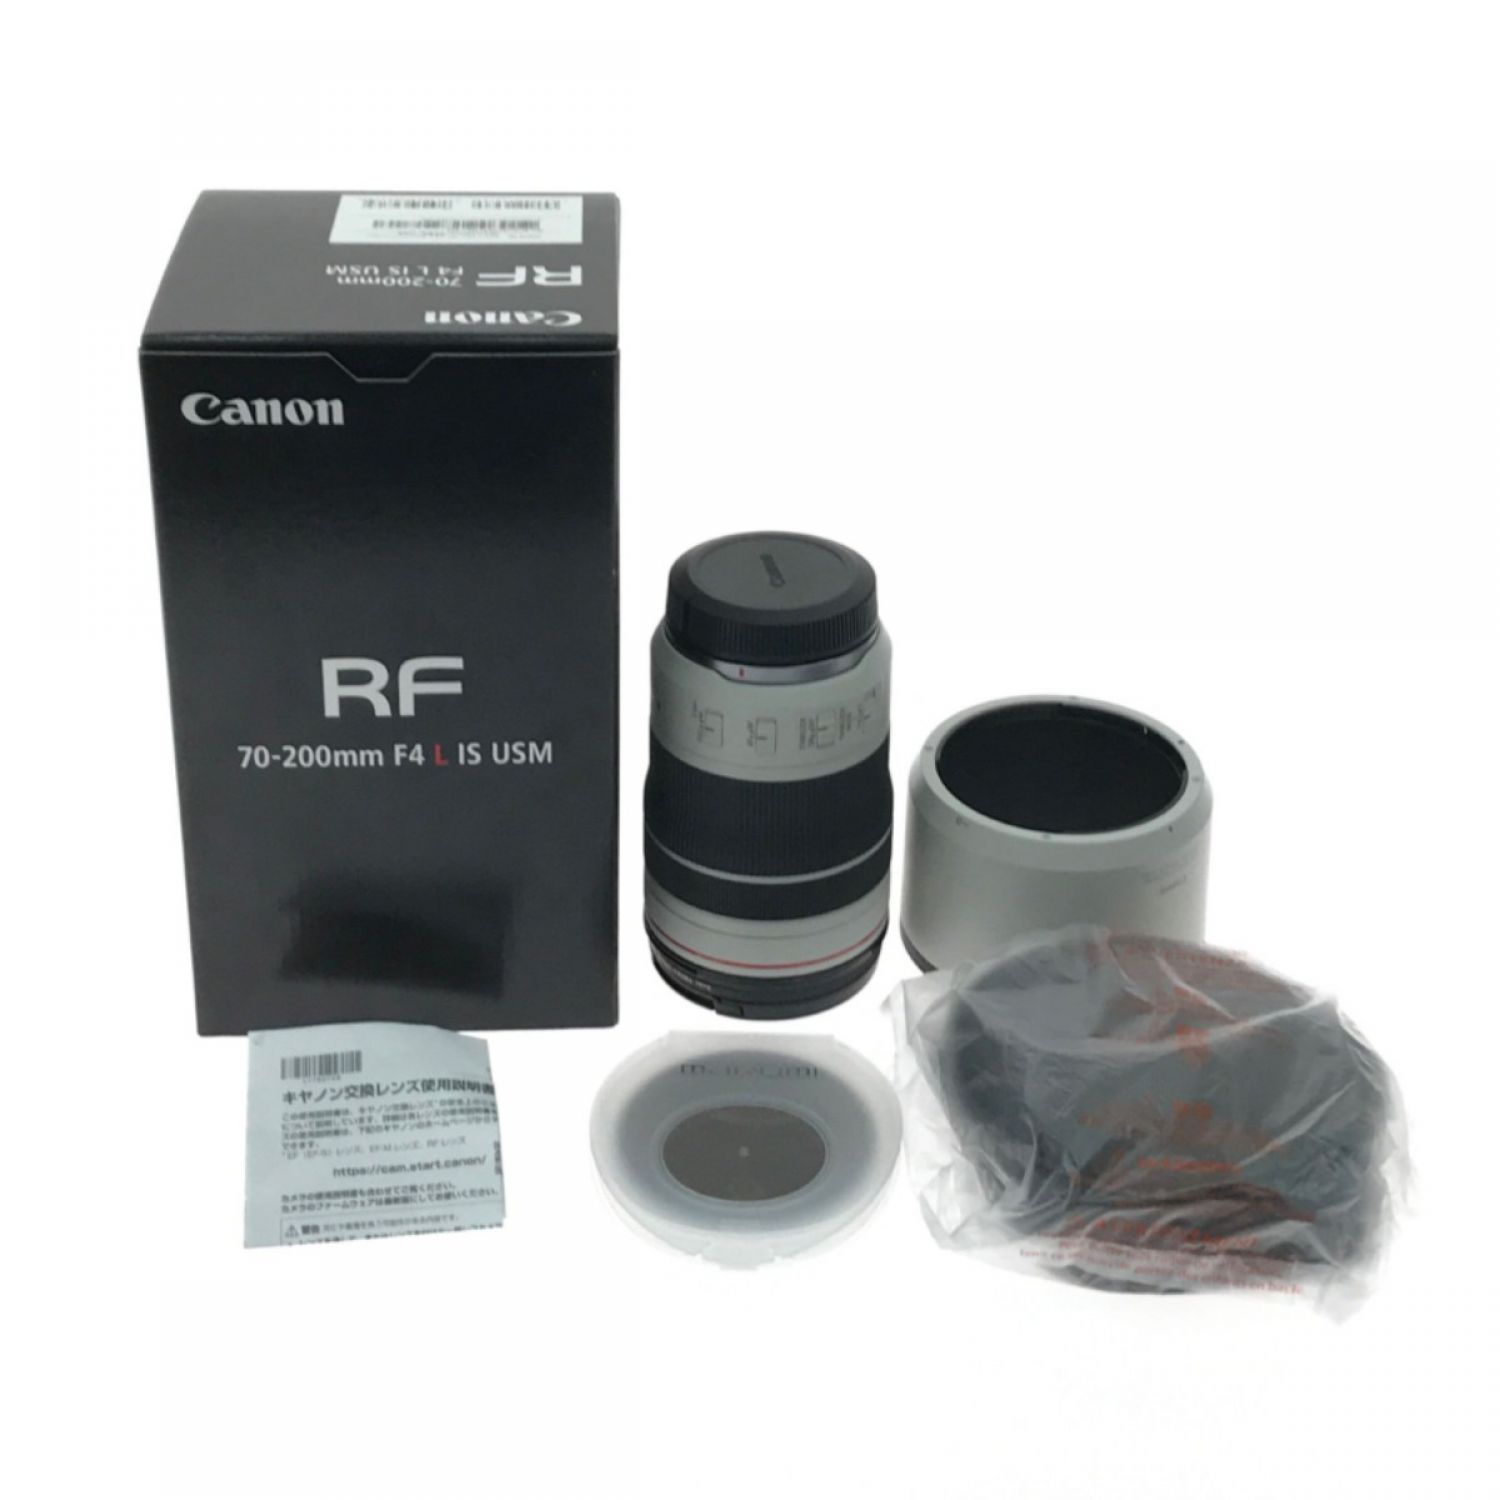 Canon RFレンズ RF70-200mm F4 L IS USM 新品未使用 - www ...